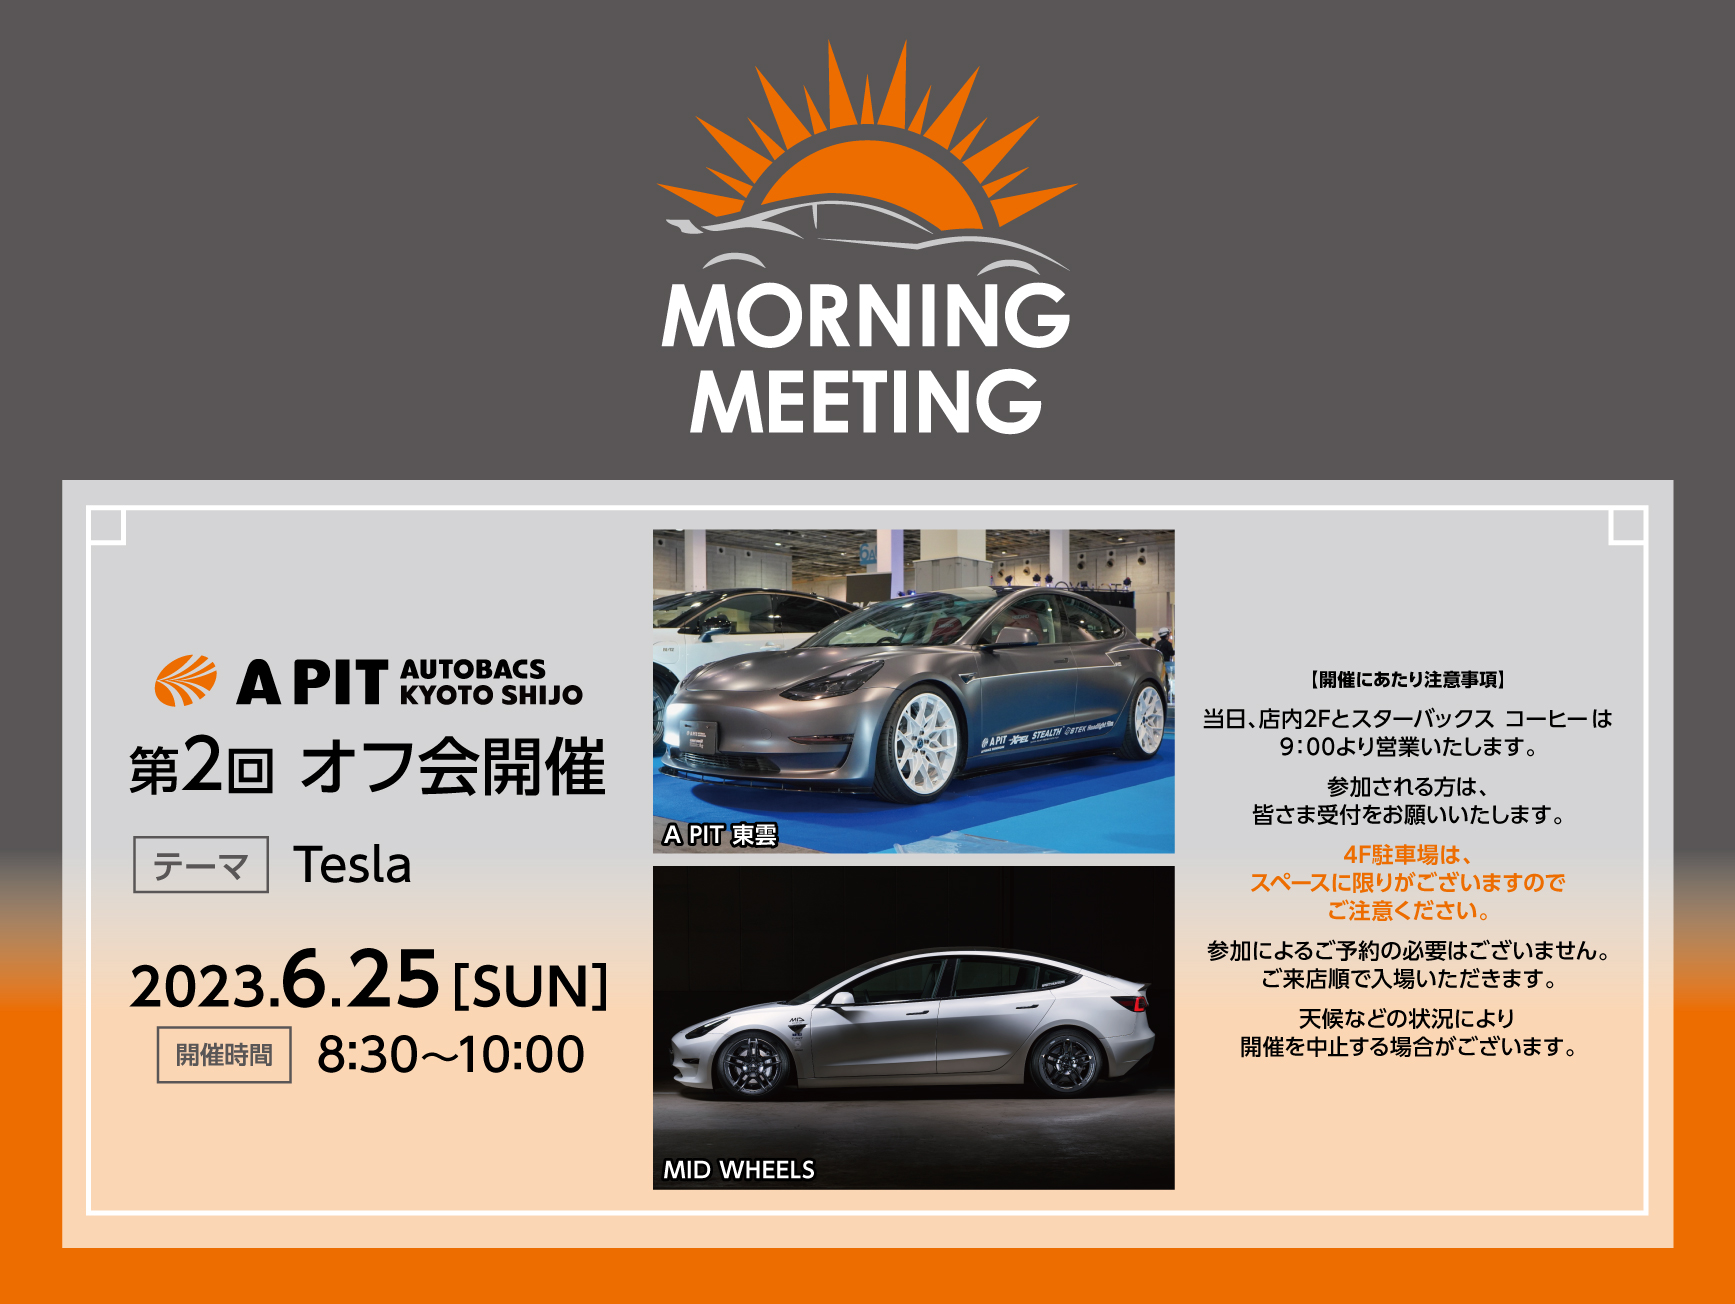 6月25日(日)第２回MORNING MEETING開催 テーマは『Tesla』